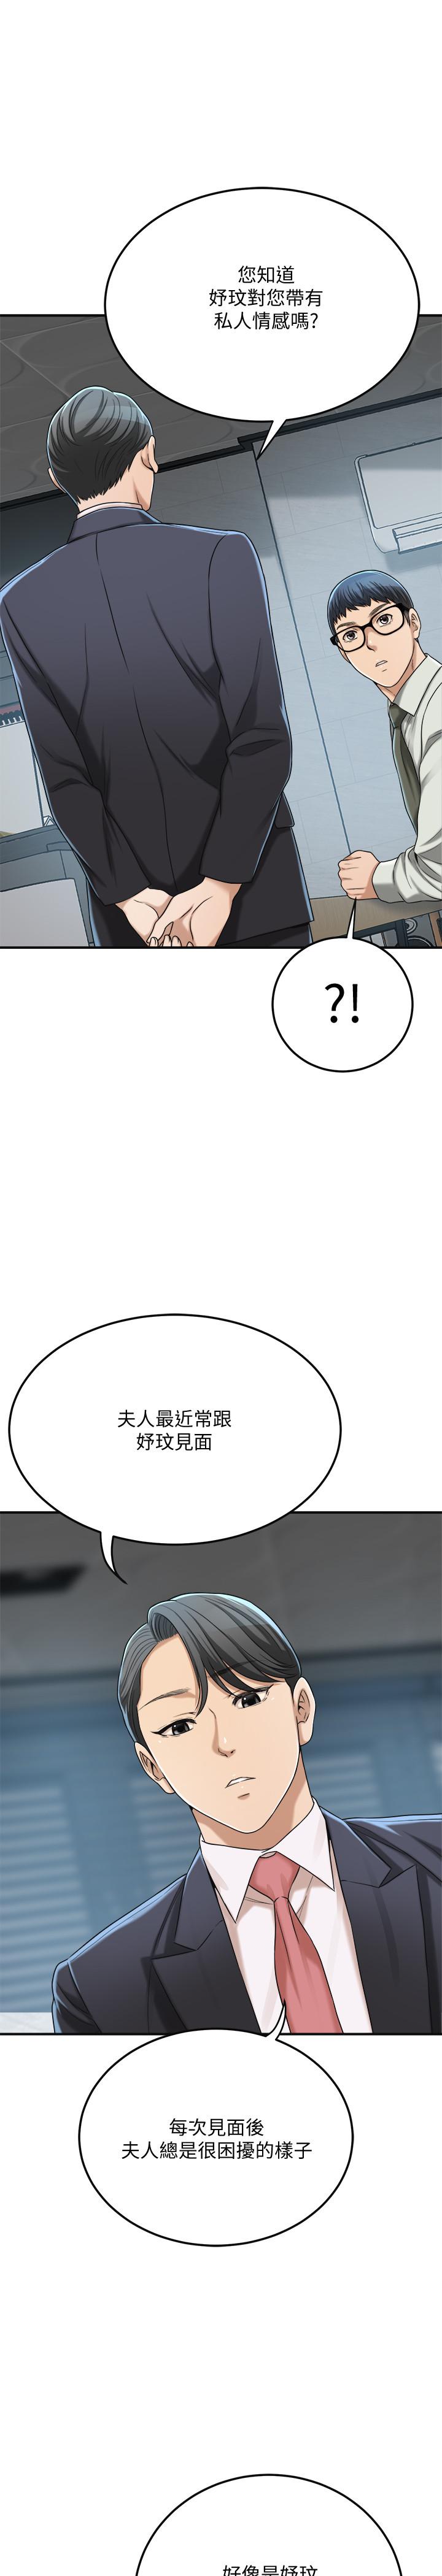 抑欲人妻漫画 免费阅读 第39话-处心积虑想揭穿筱妍 39.jpg